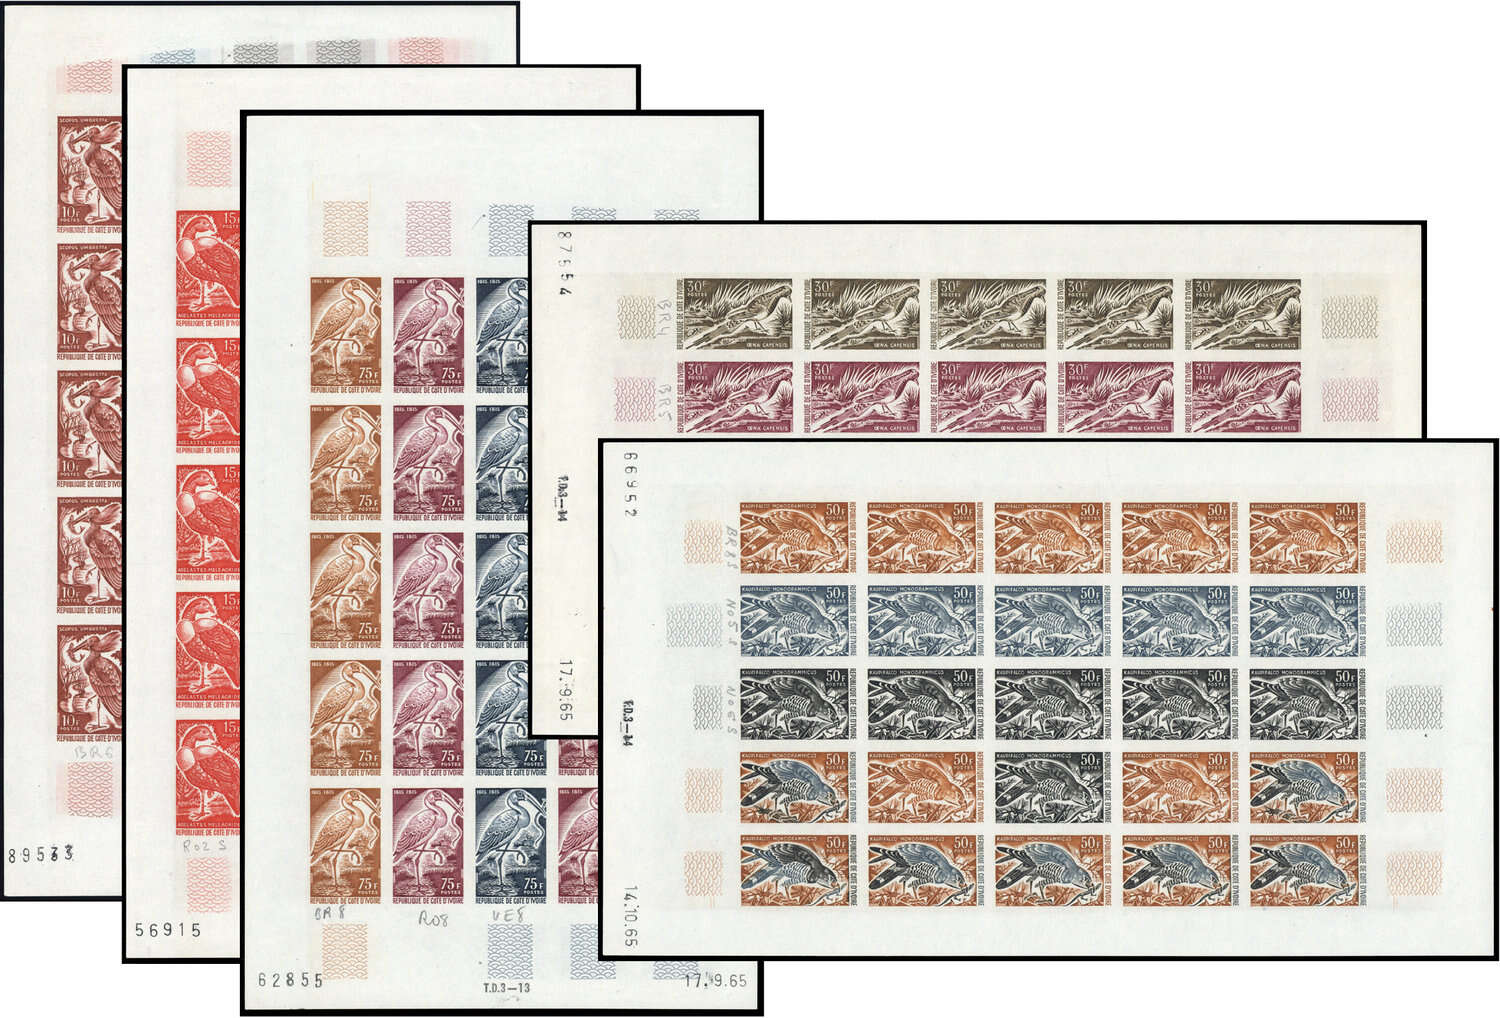 Lot 329 - andere gebiete elfenbeinküste -  Deutsche Briefmarken AG 6th Large Lot Auction Deutsche Briefmarken AG